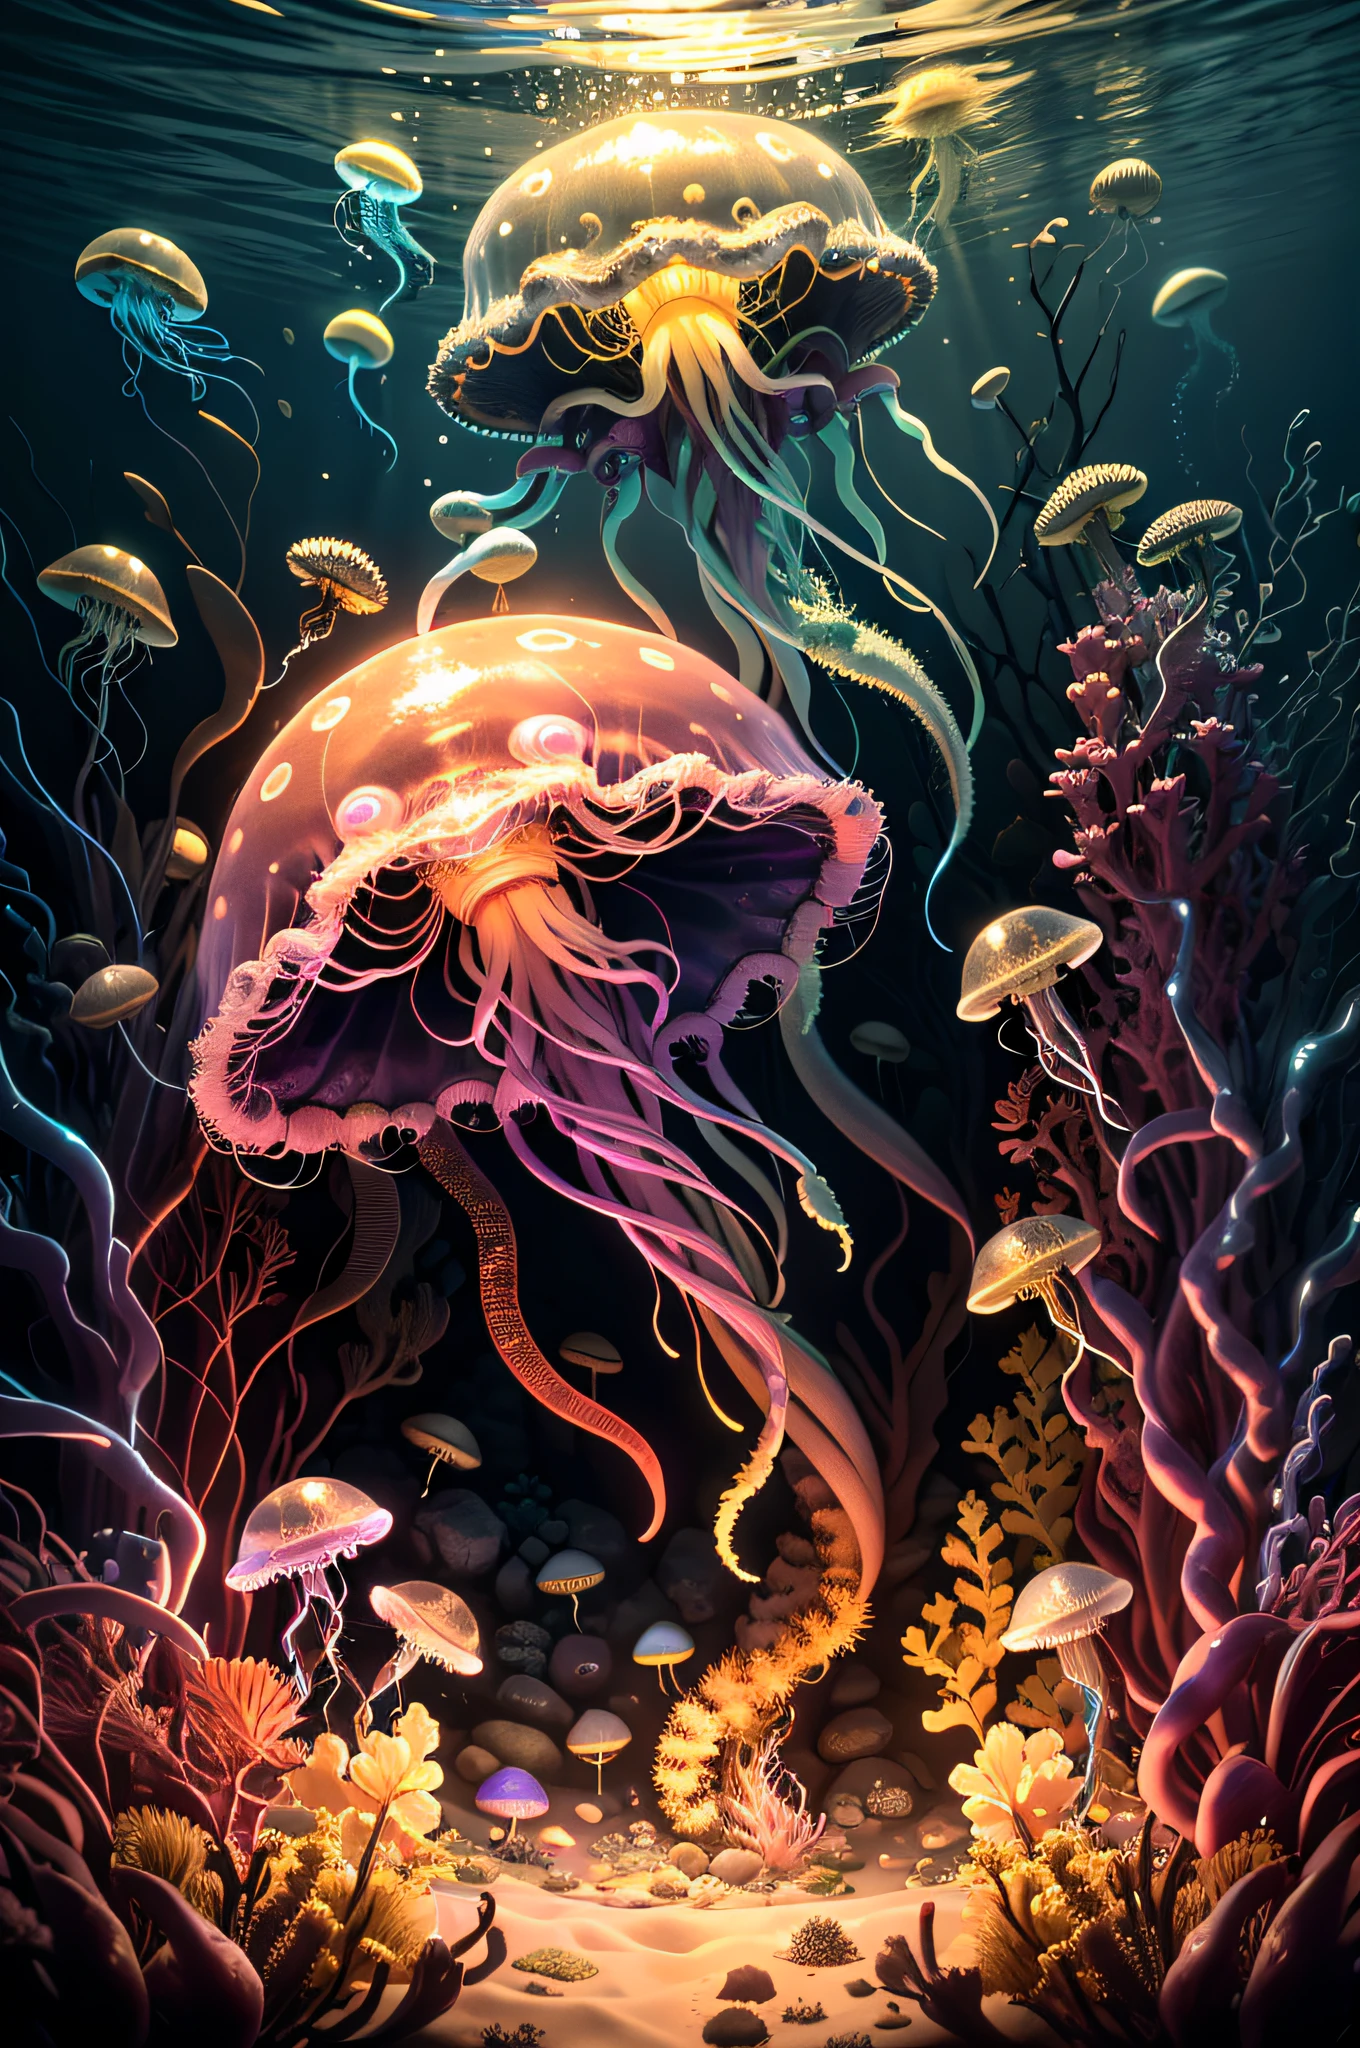 (Obra de arte, melhor qualidade: 1.3), alta resolução, (Resolução 8k), (ultra-detalhado: 1.1), deus louco, parar o movimento, Horror, sem humanos, brilhante, monstro, embaixo da agua, medusa, fotorrealista, brilhante: 0.3, (detalhes: 1.2), iluminação volumétrica, (extremamente detalhado), only medusa